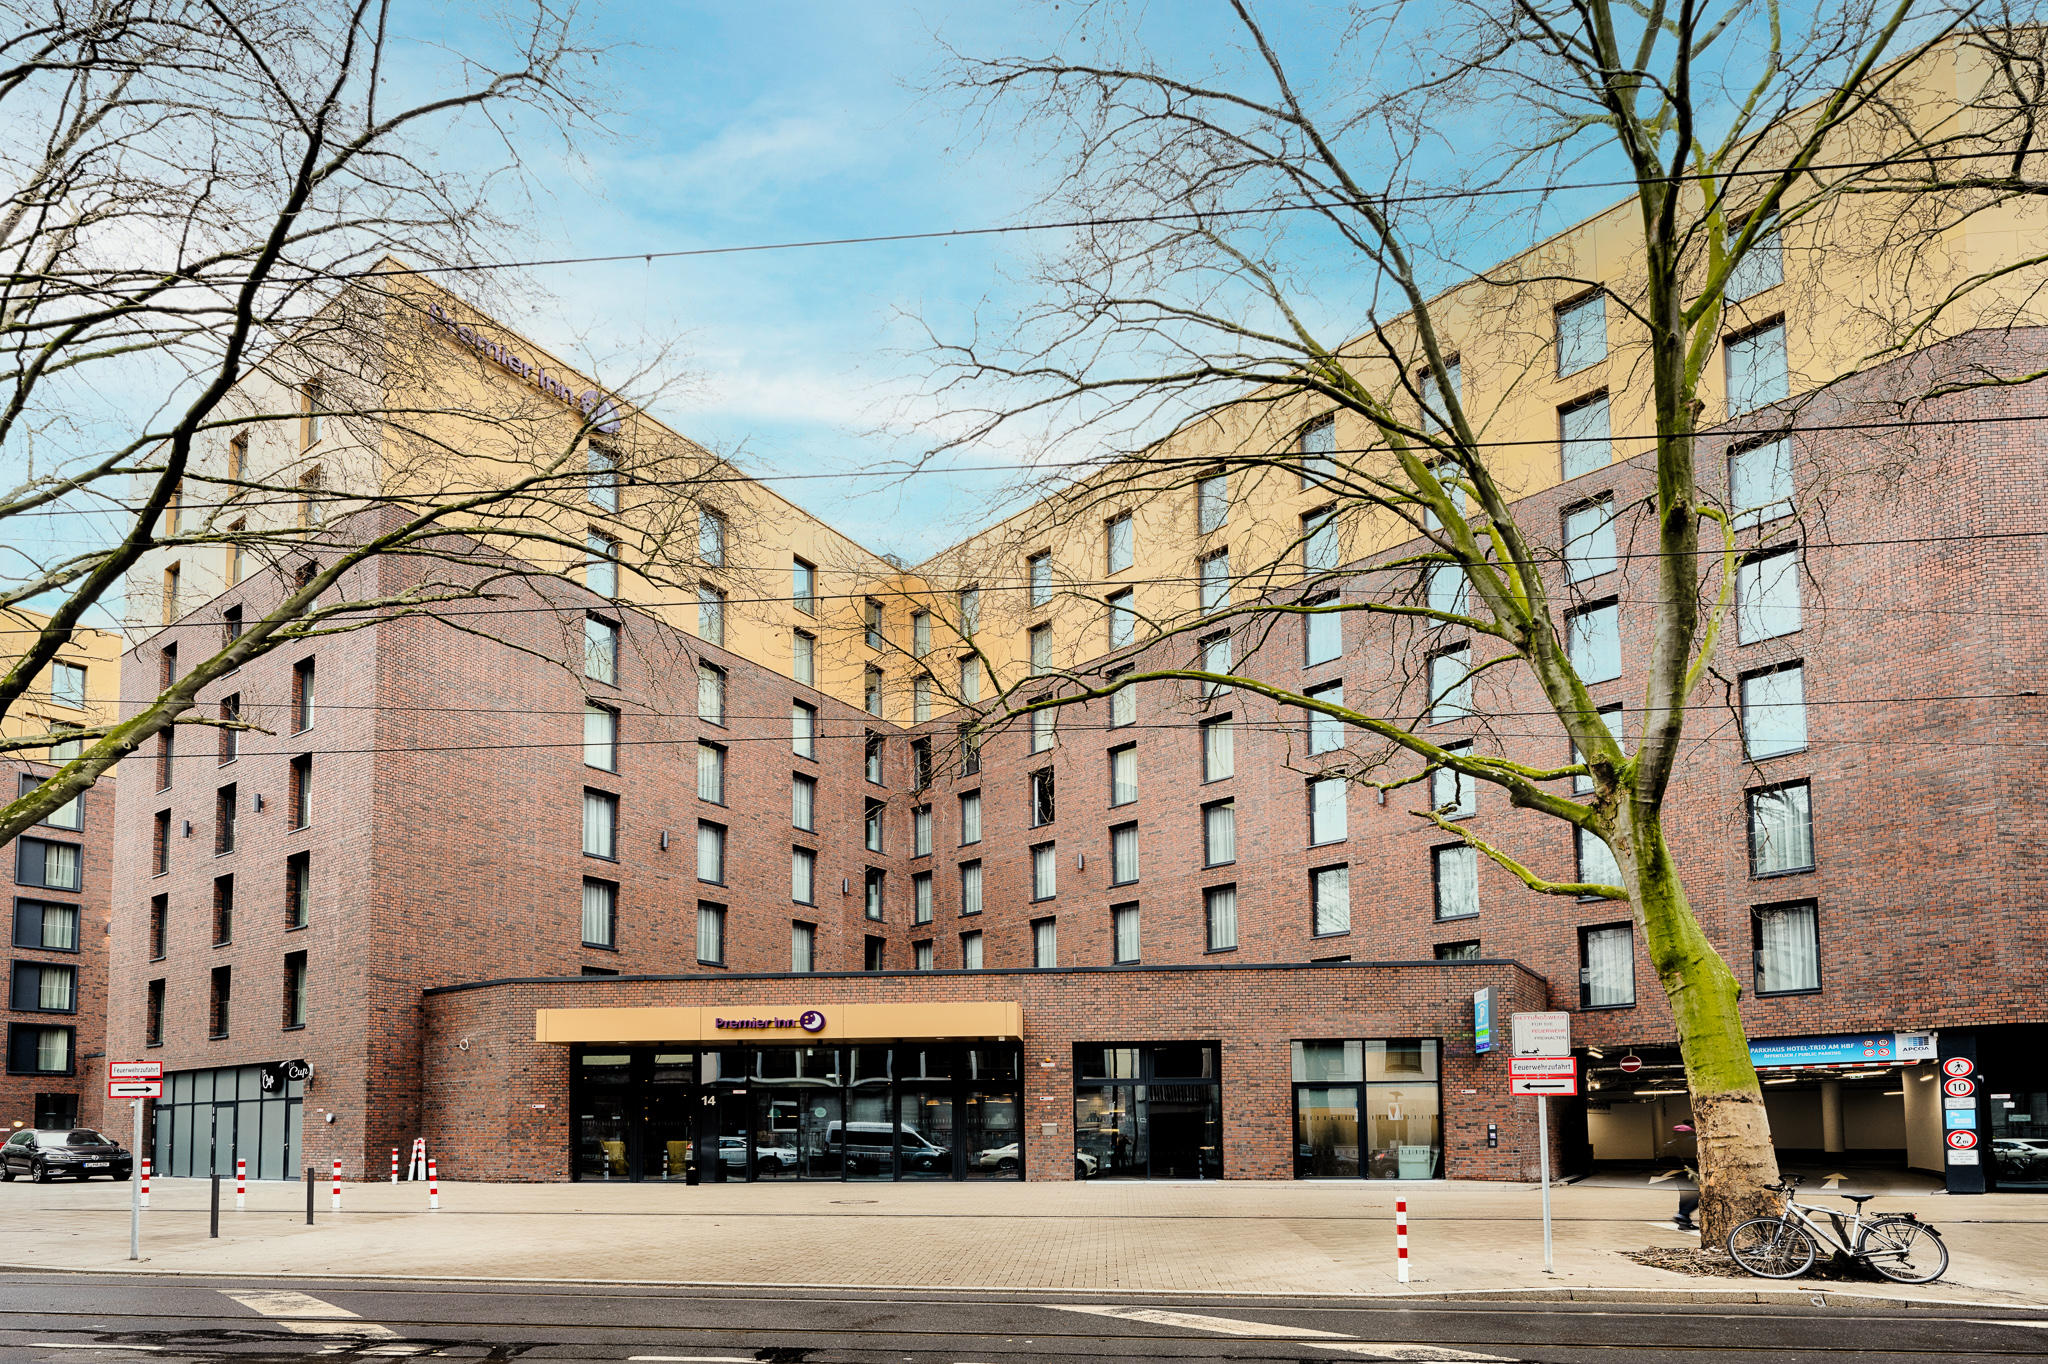 Premier Inn Düsseldorf City Friedrichstadt hotel, Harkortstrasse 14 in Düsseldorf